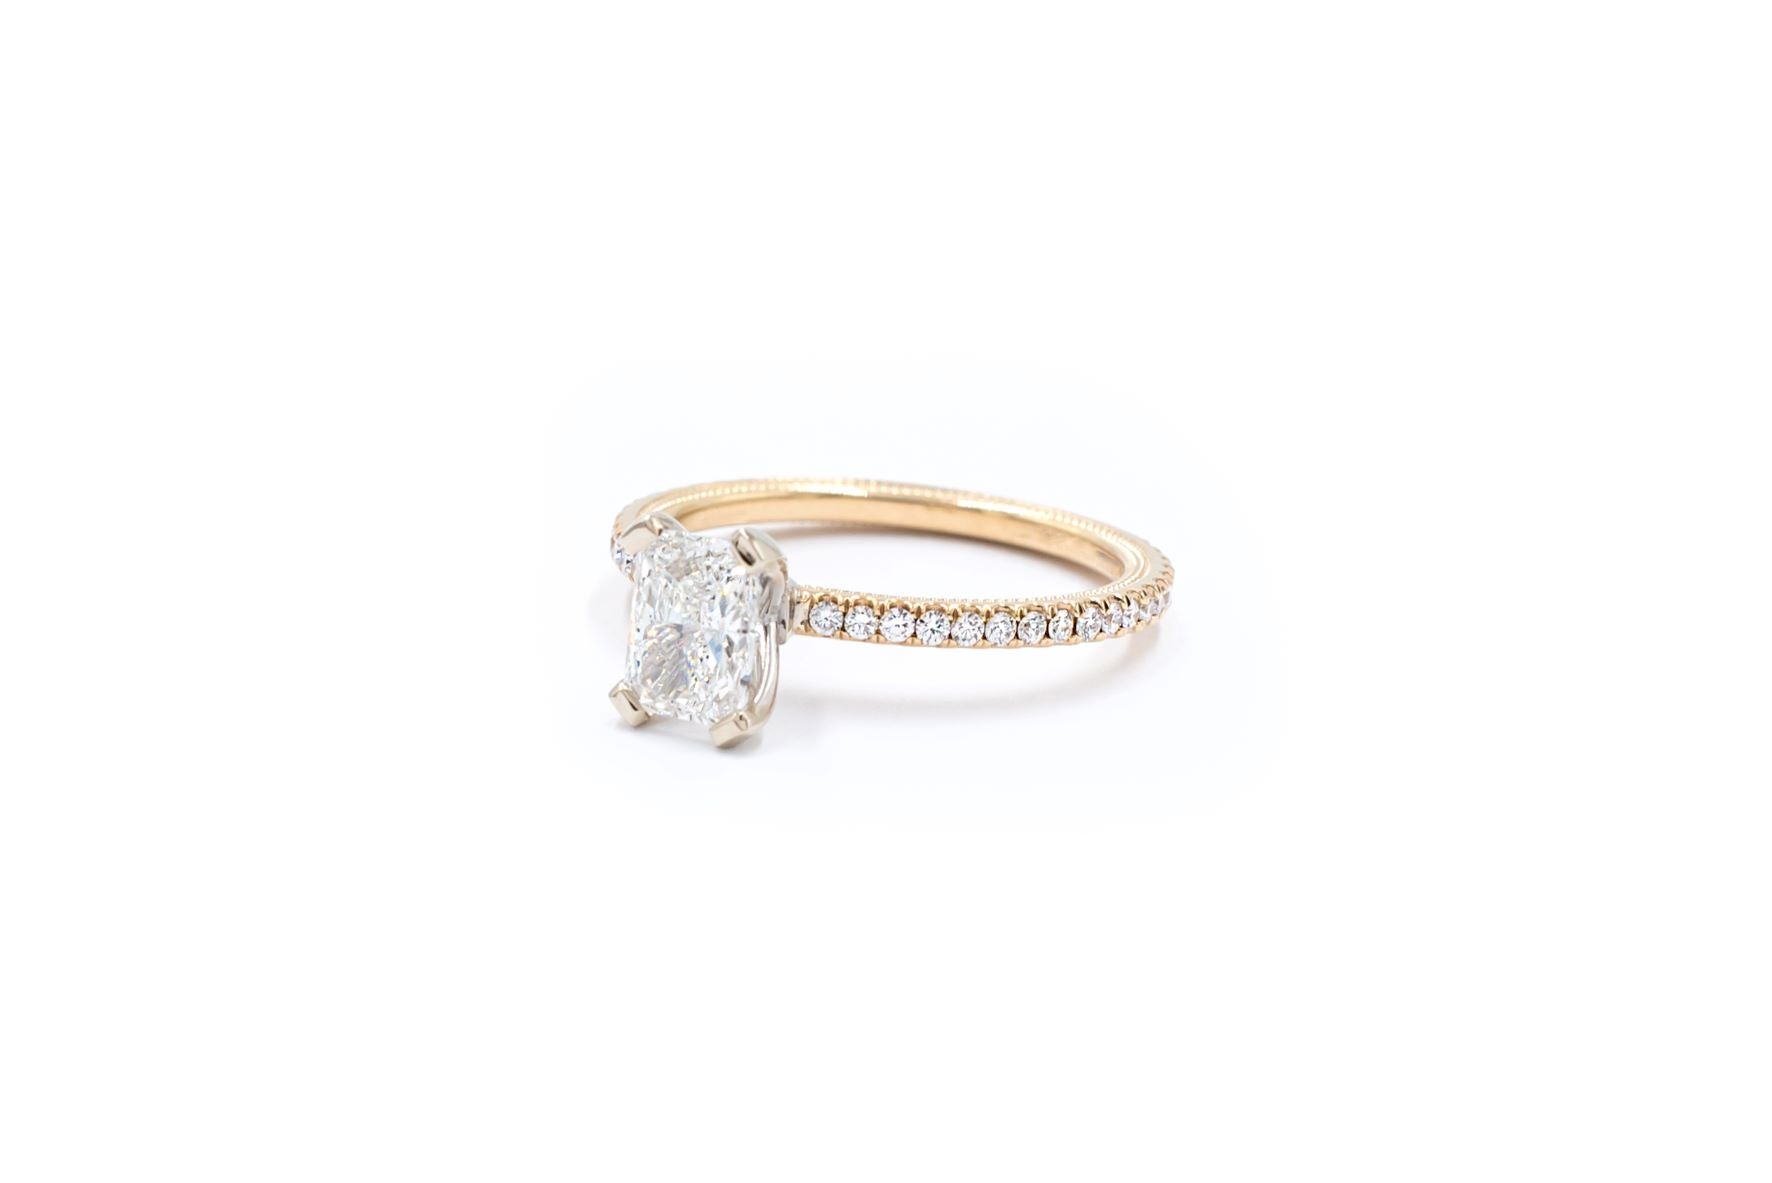 Verragio 1.30 ctw Radiant Cut Diamond Engagement Ring GIA